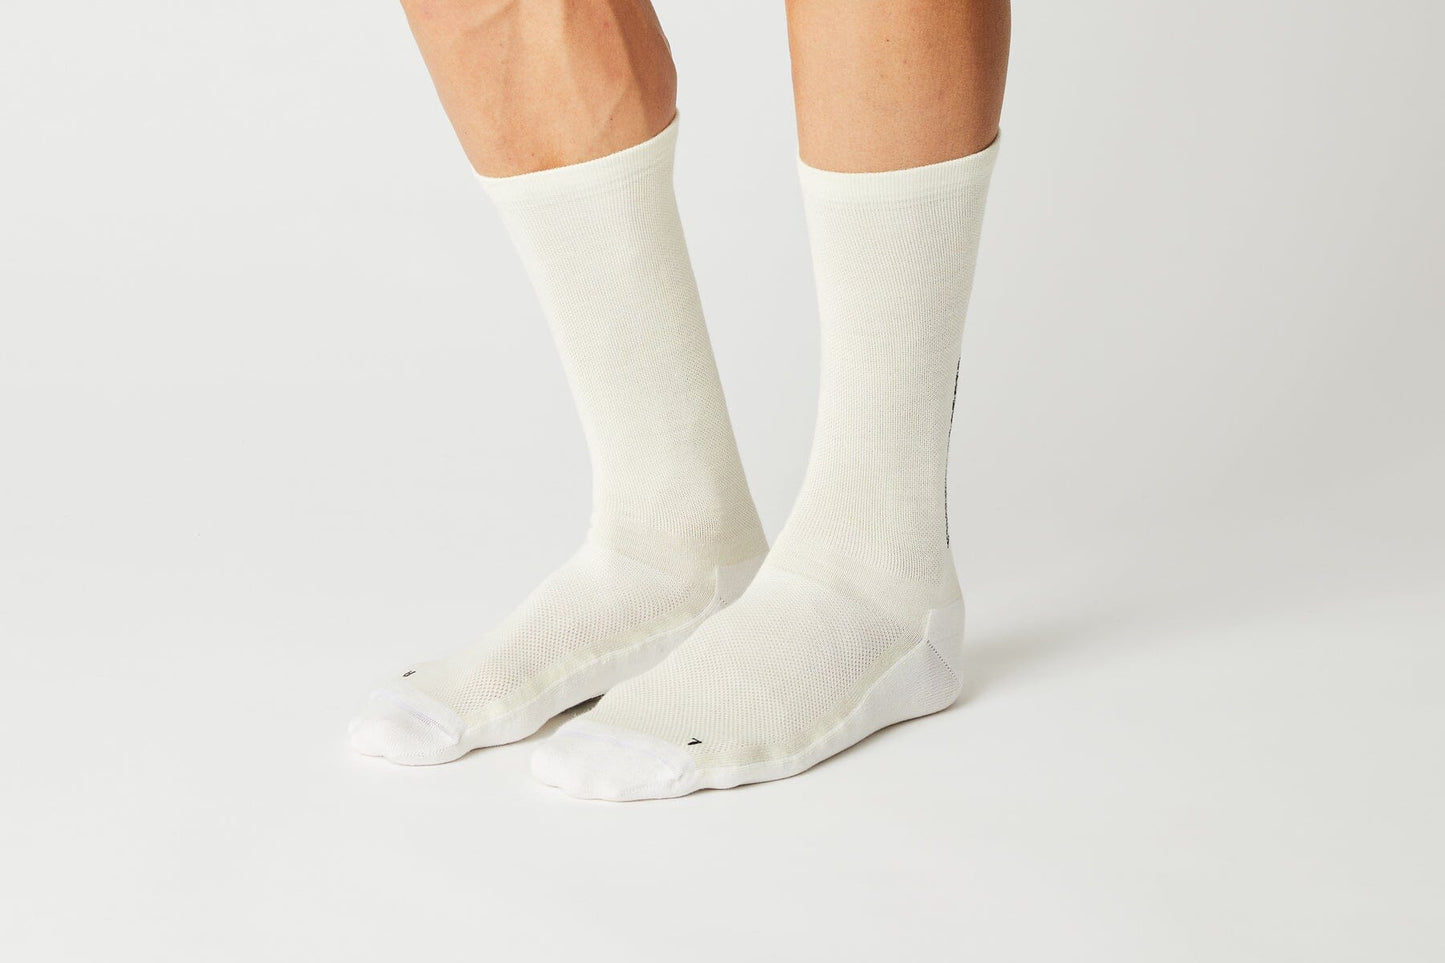 Fingerscrossed - Socks Light Merino Cream Socks Fingerscrossed 